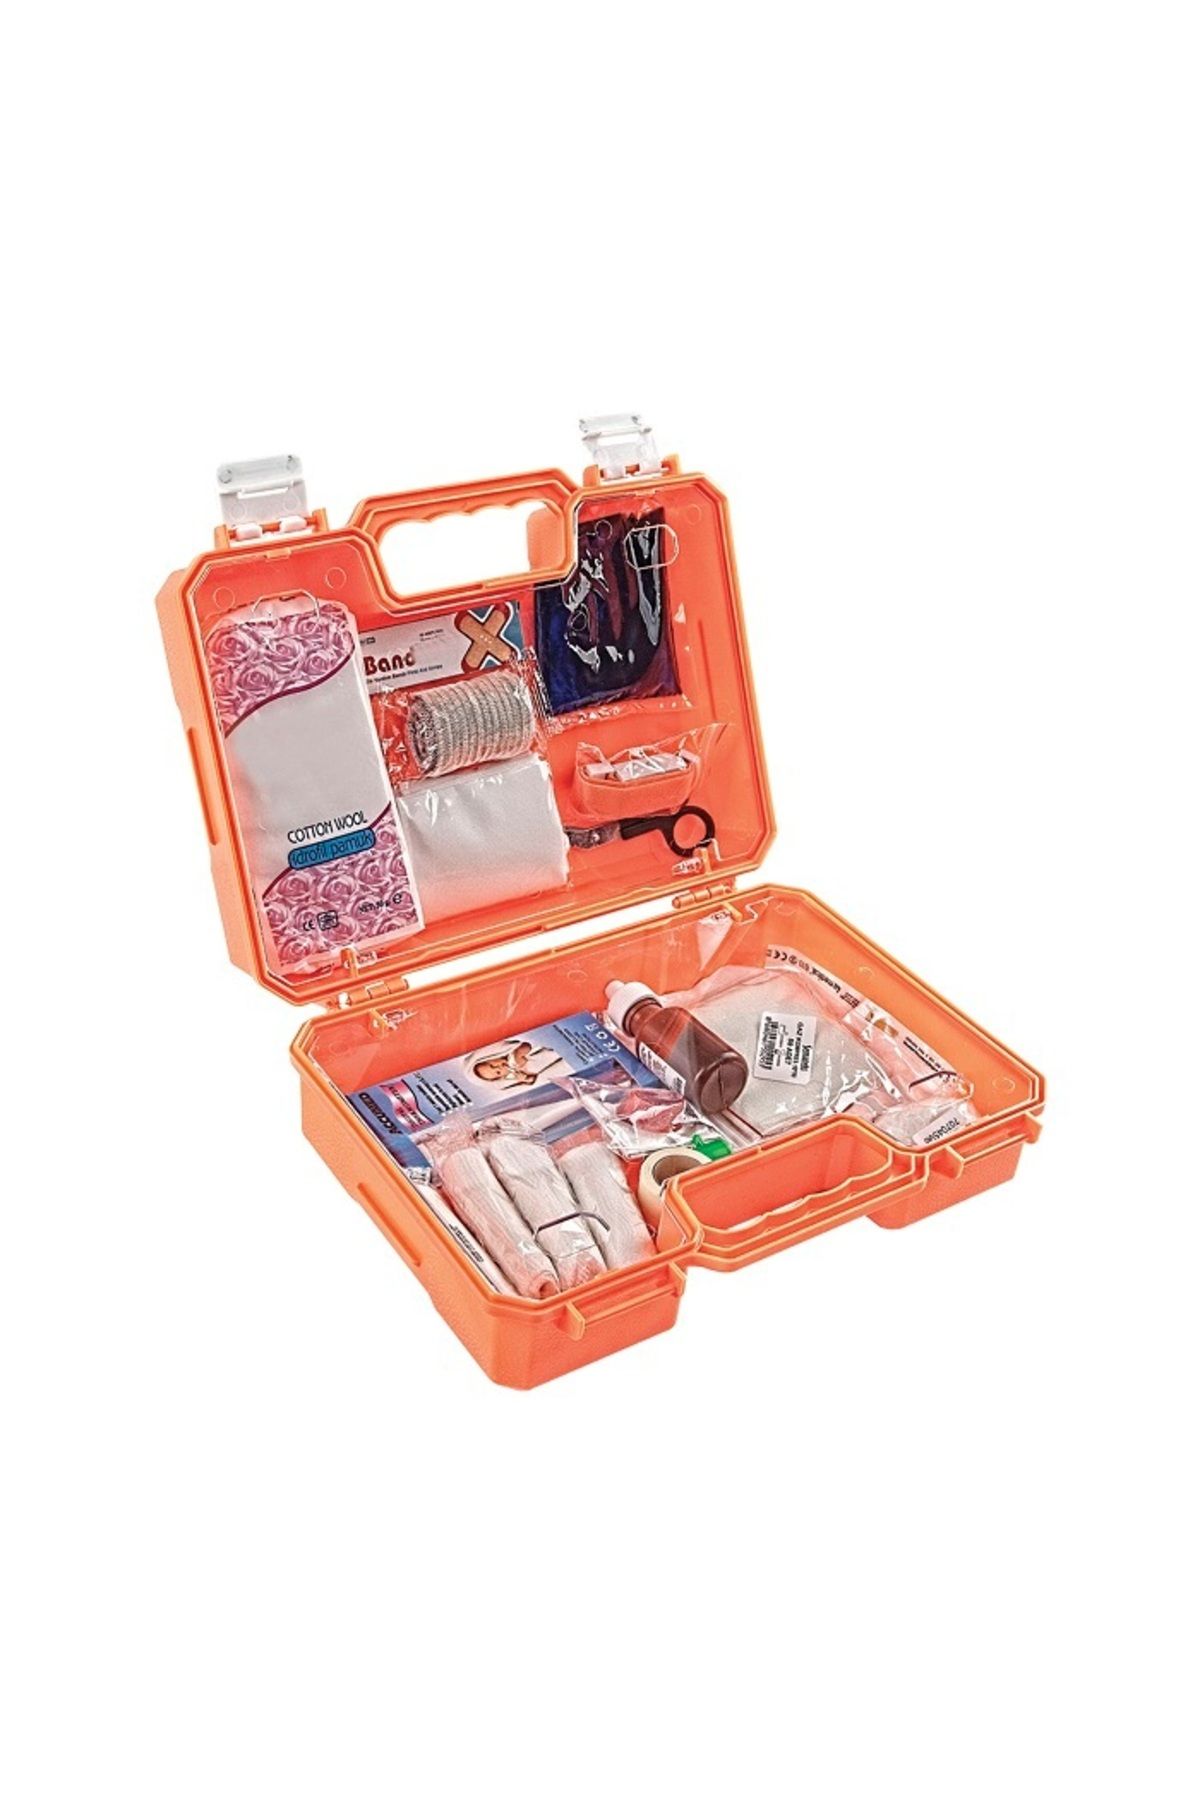 KAYAMU Büyük Boy İlk Yardım Seti First Aid Kit (K0)